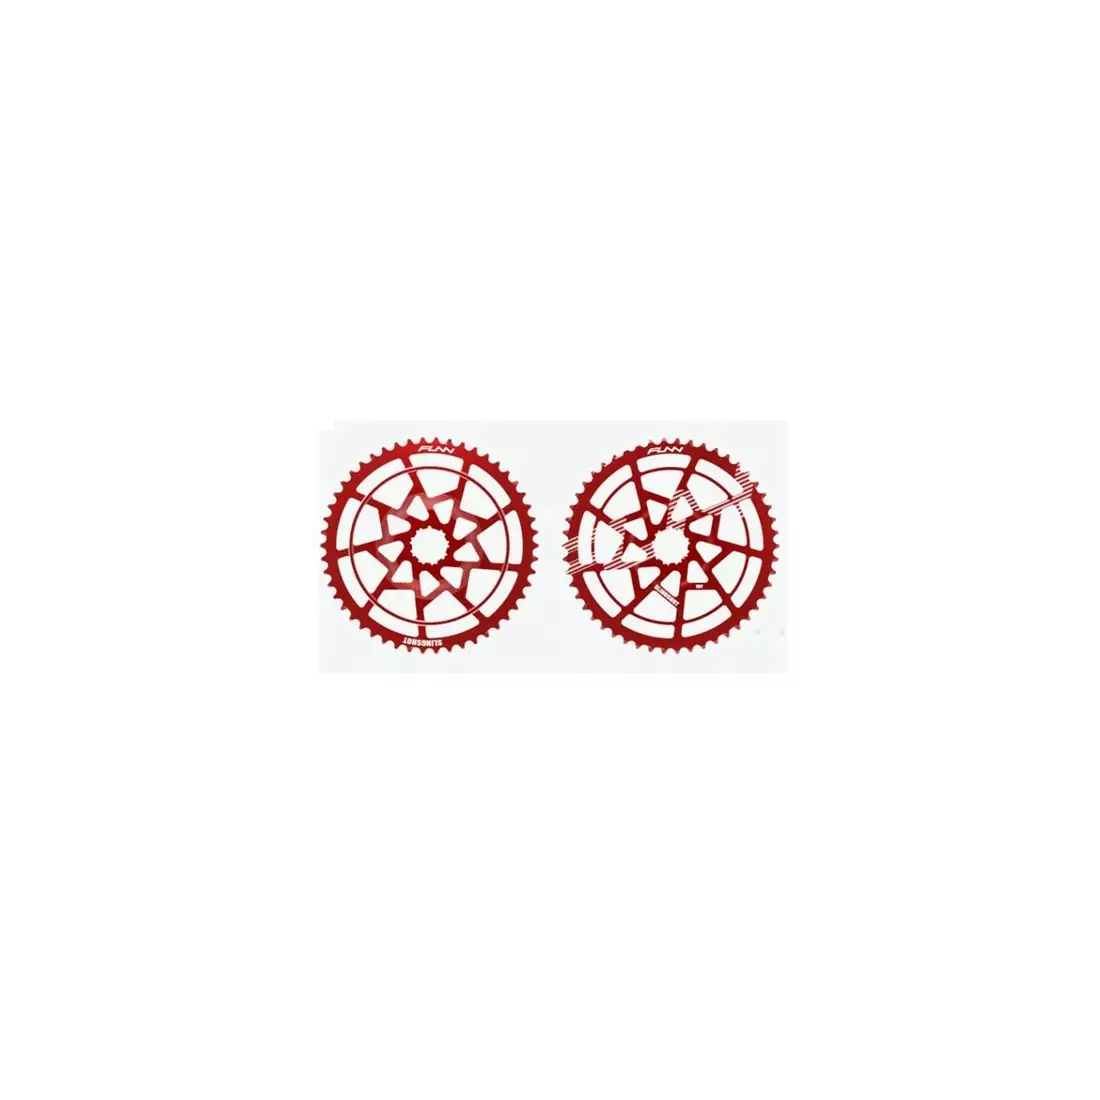 FUNN Kassettenverlängerung Shimano Megarange 50T, rot